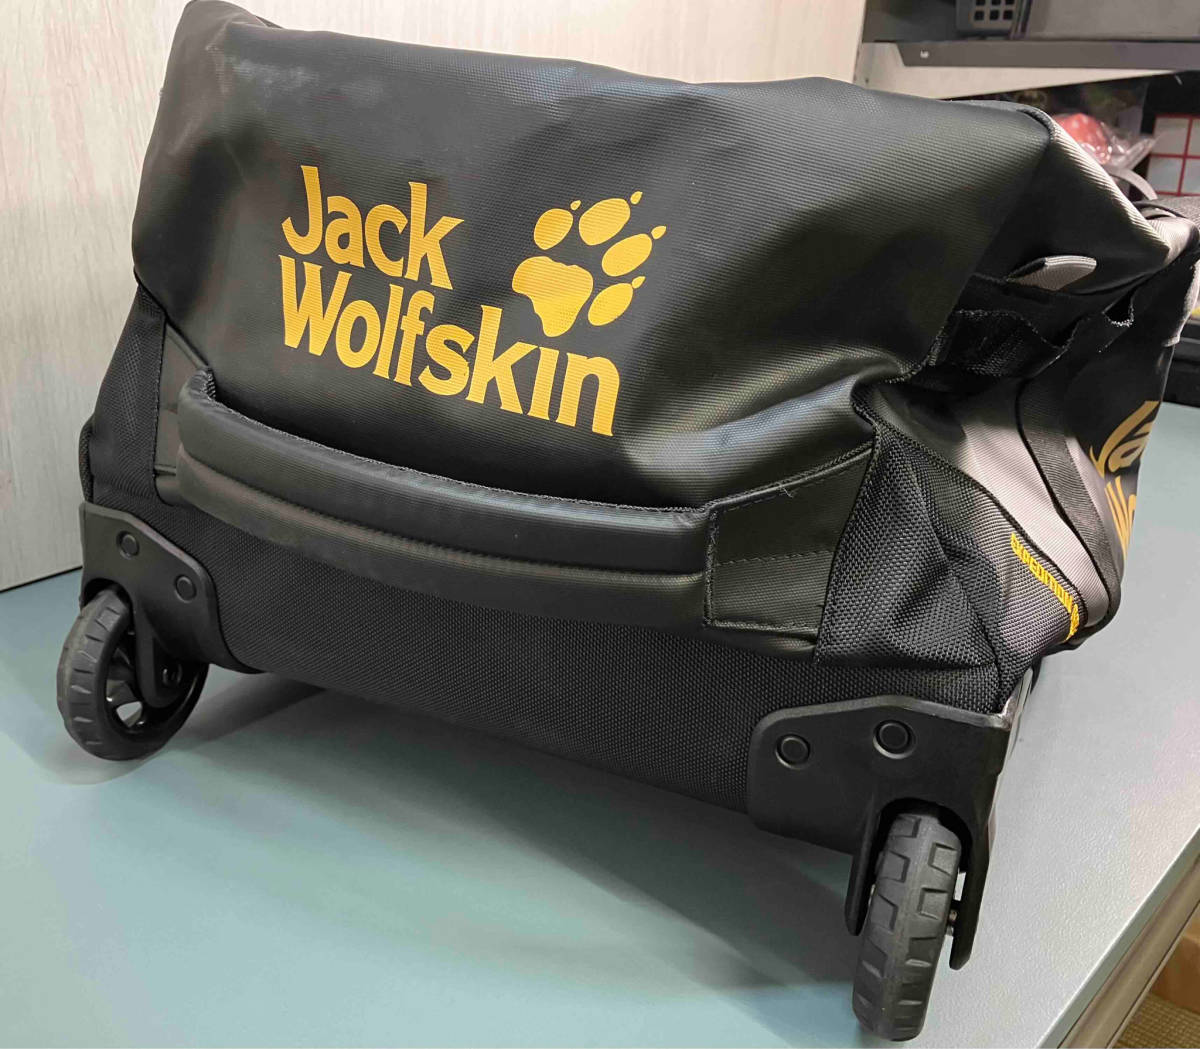 JACK WOLFSKIN / Jack Wolfskin /EXPEDITION ROLLER90/ black / travel bag 